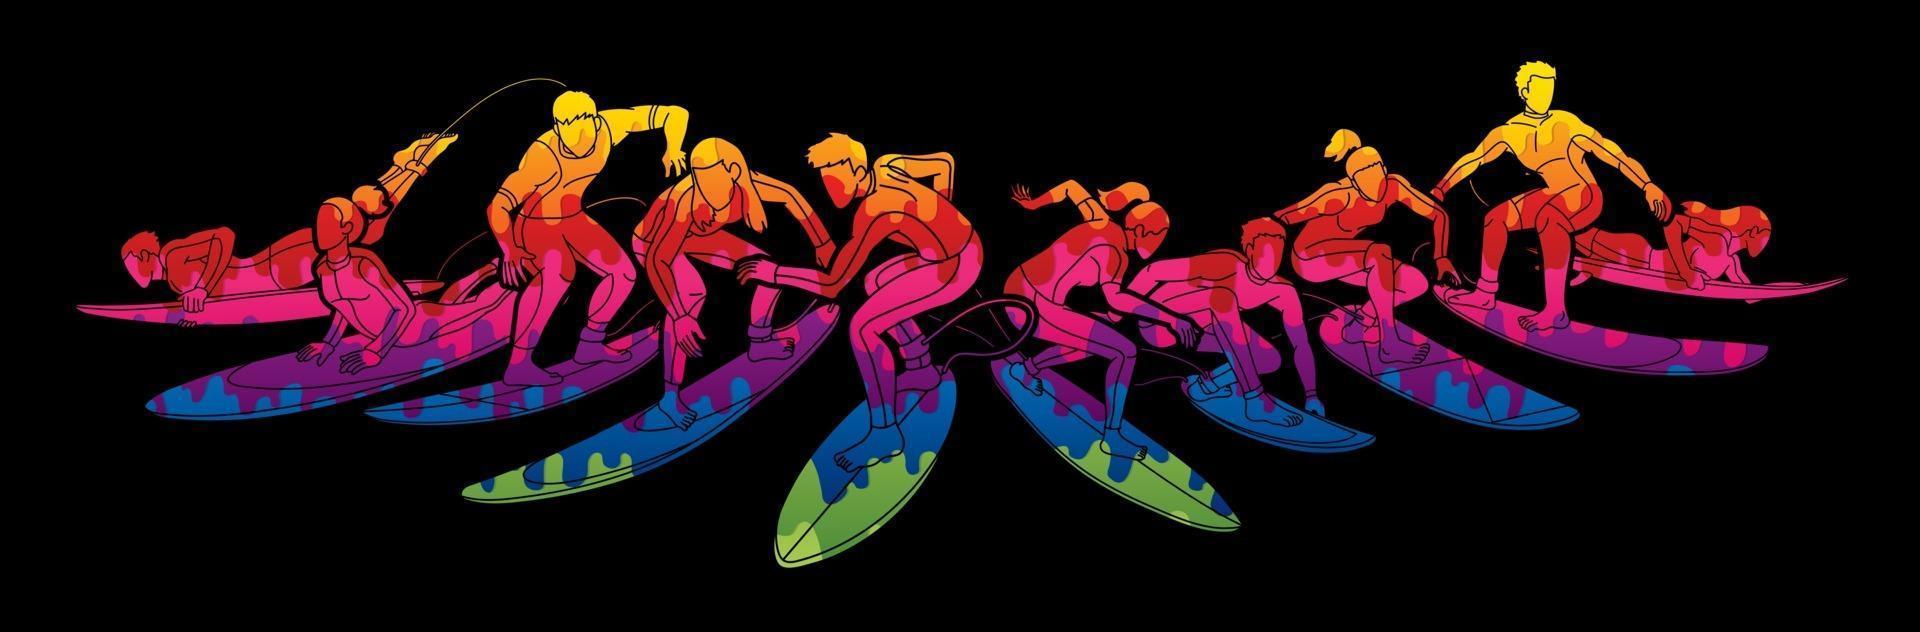 grupo de surfista esporte de surf de ação vetor